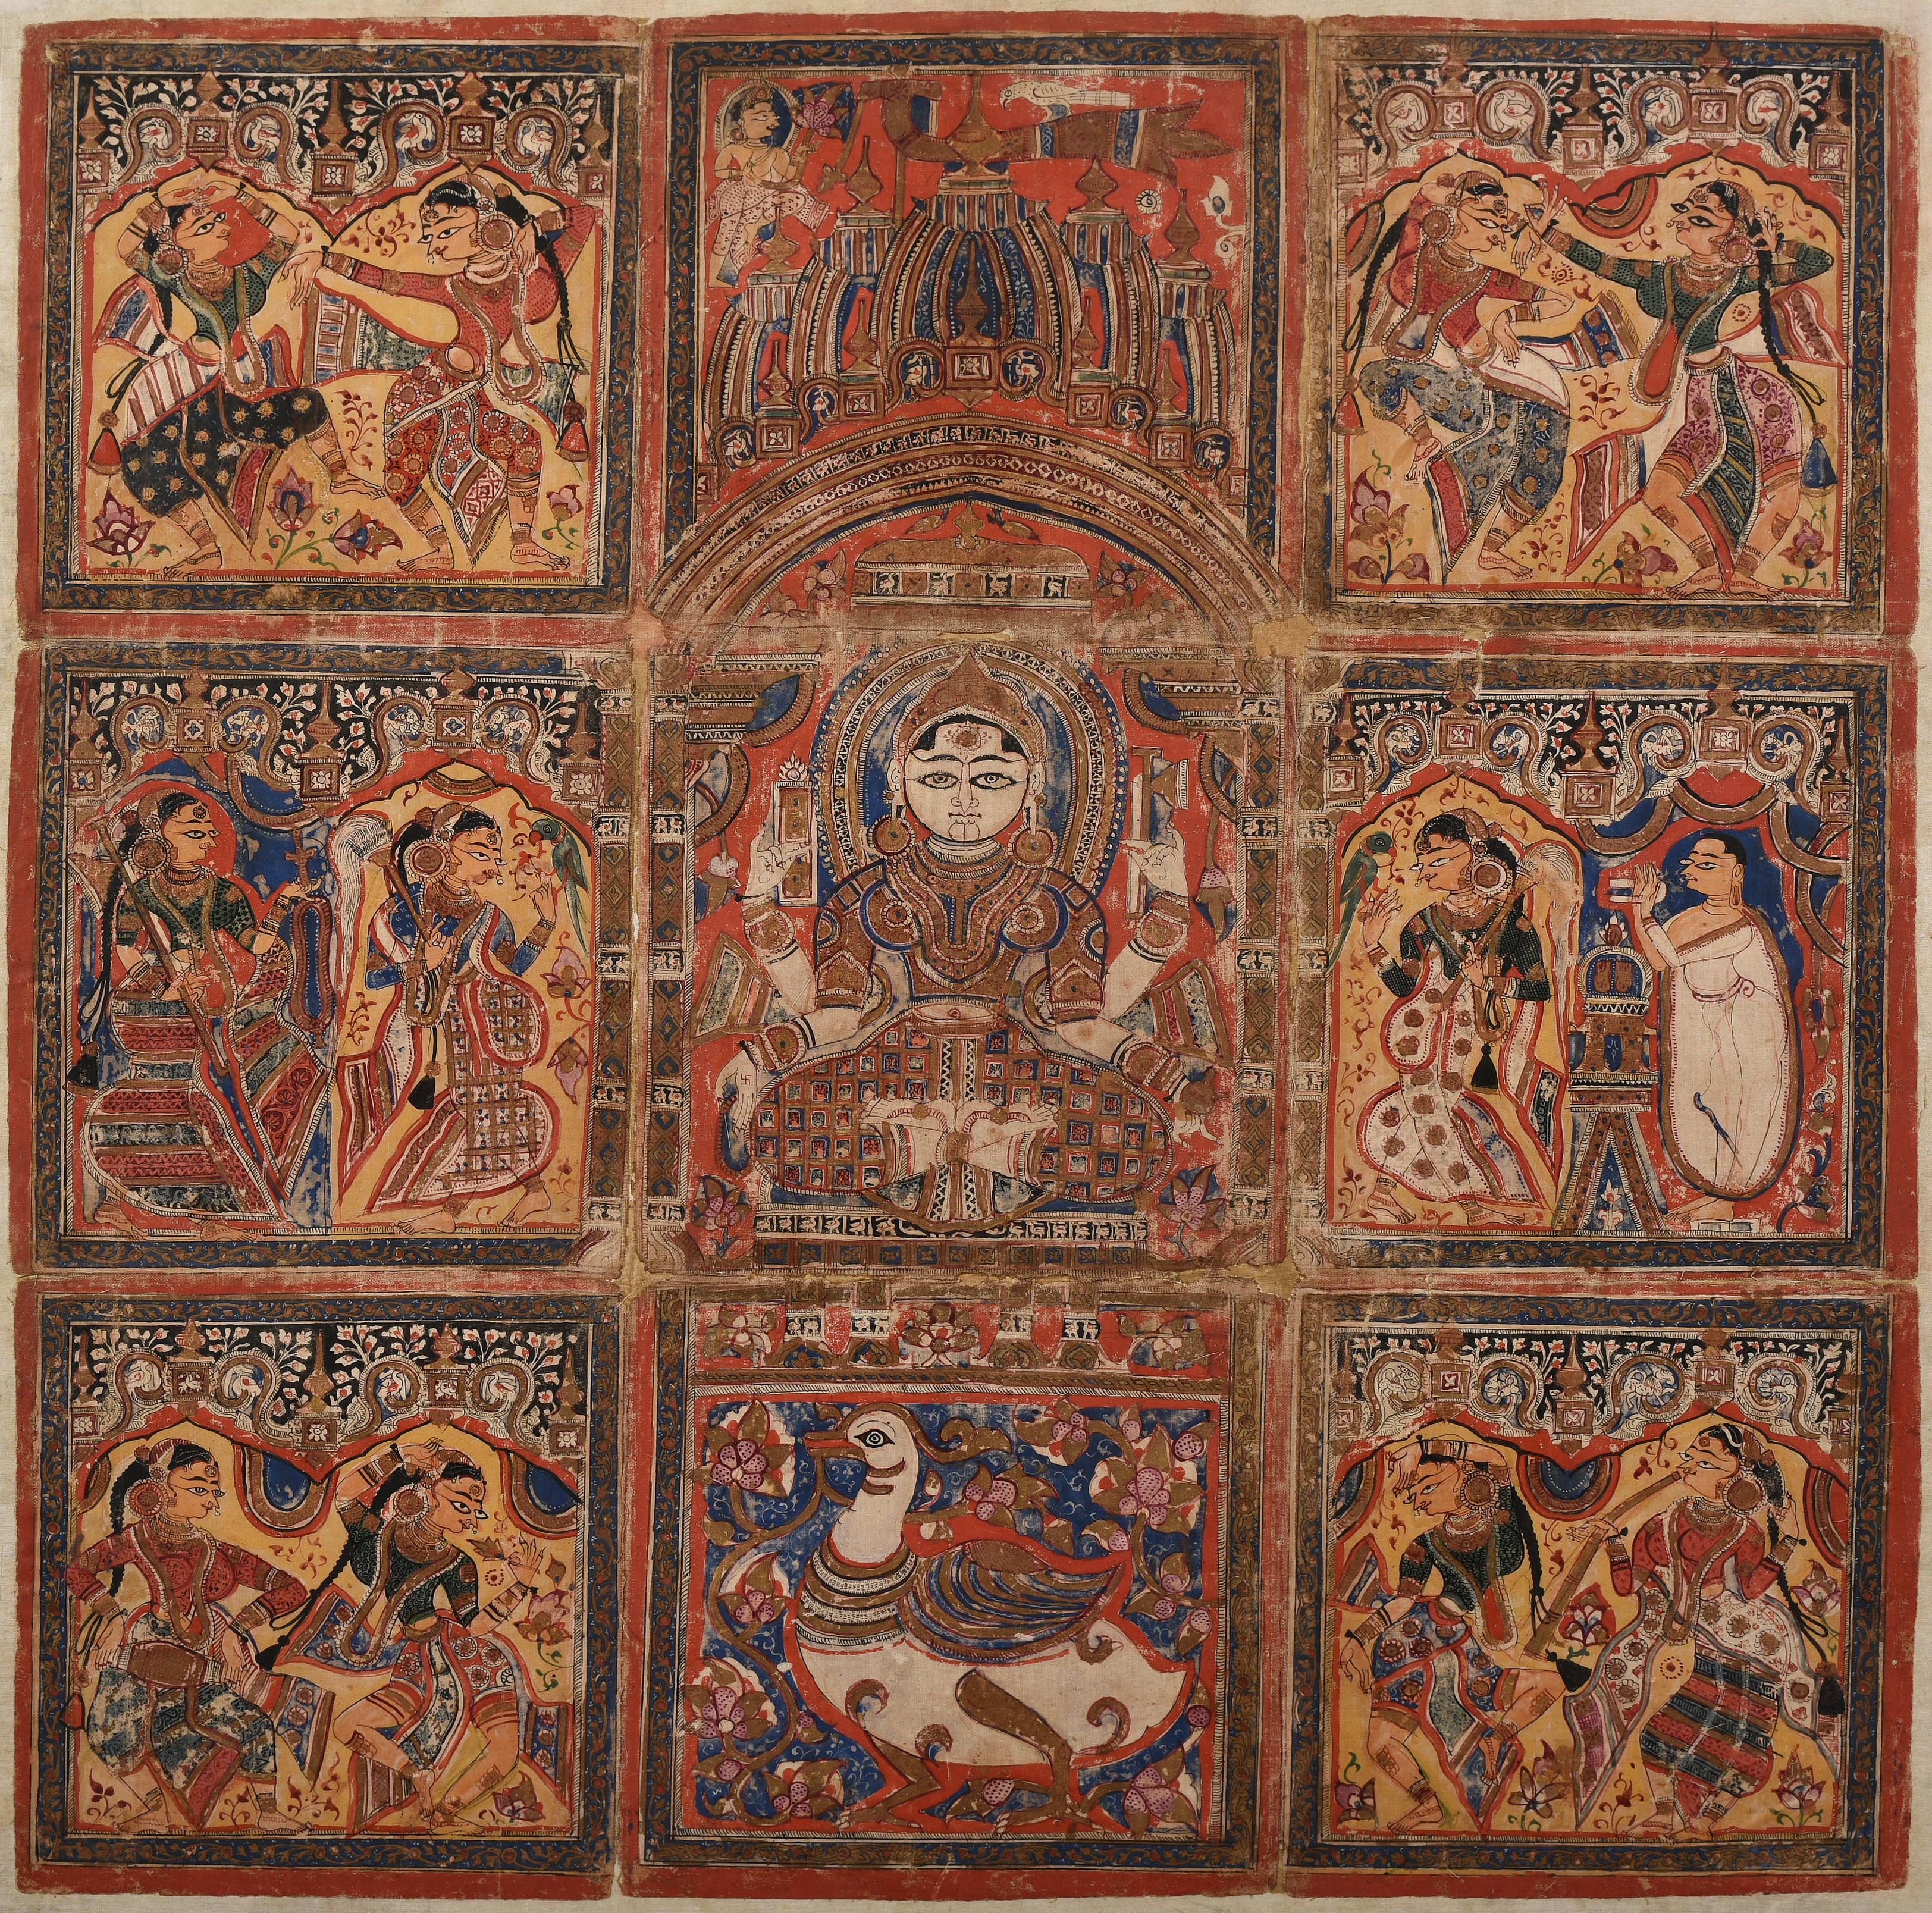 Saraswati Pata by Artista anónimo  - c. 1475-1500 - 54,8 x 44,5 cm Museo Nacional de Nueva Delhi, India